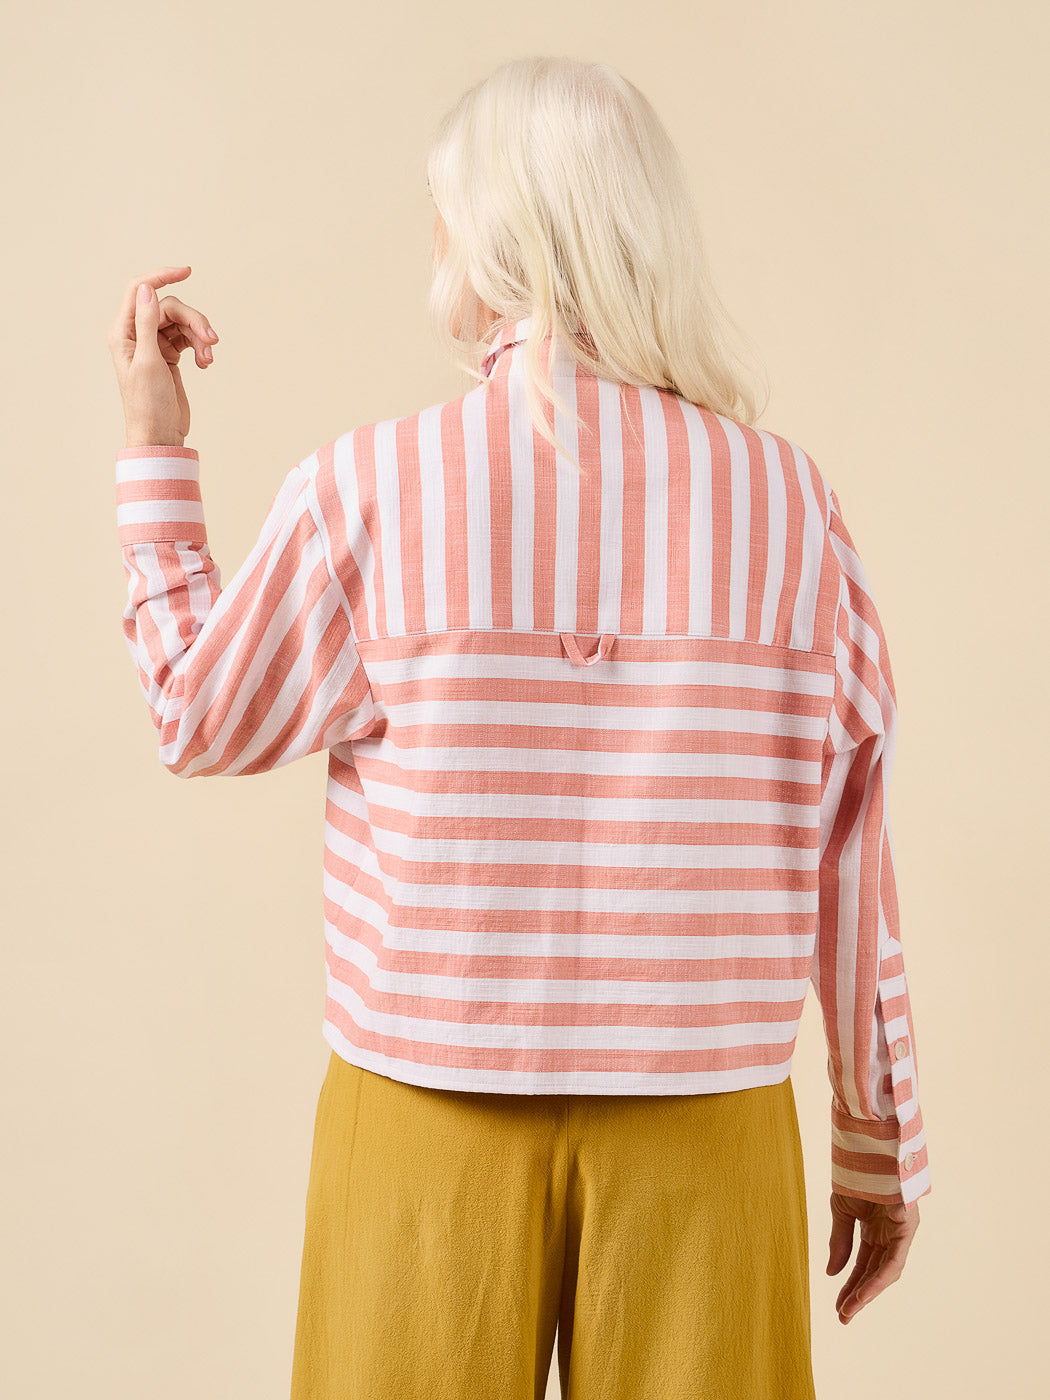 JENNA Shirt and Shirt Dress | Paper pattern - Closet Core Patterns 